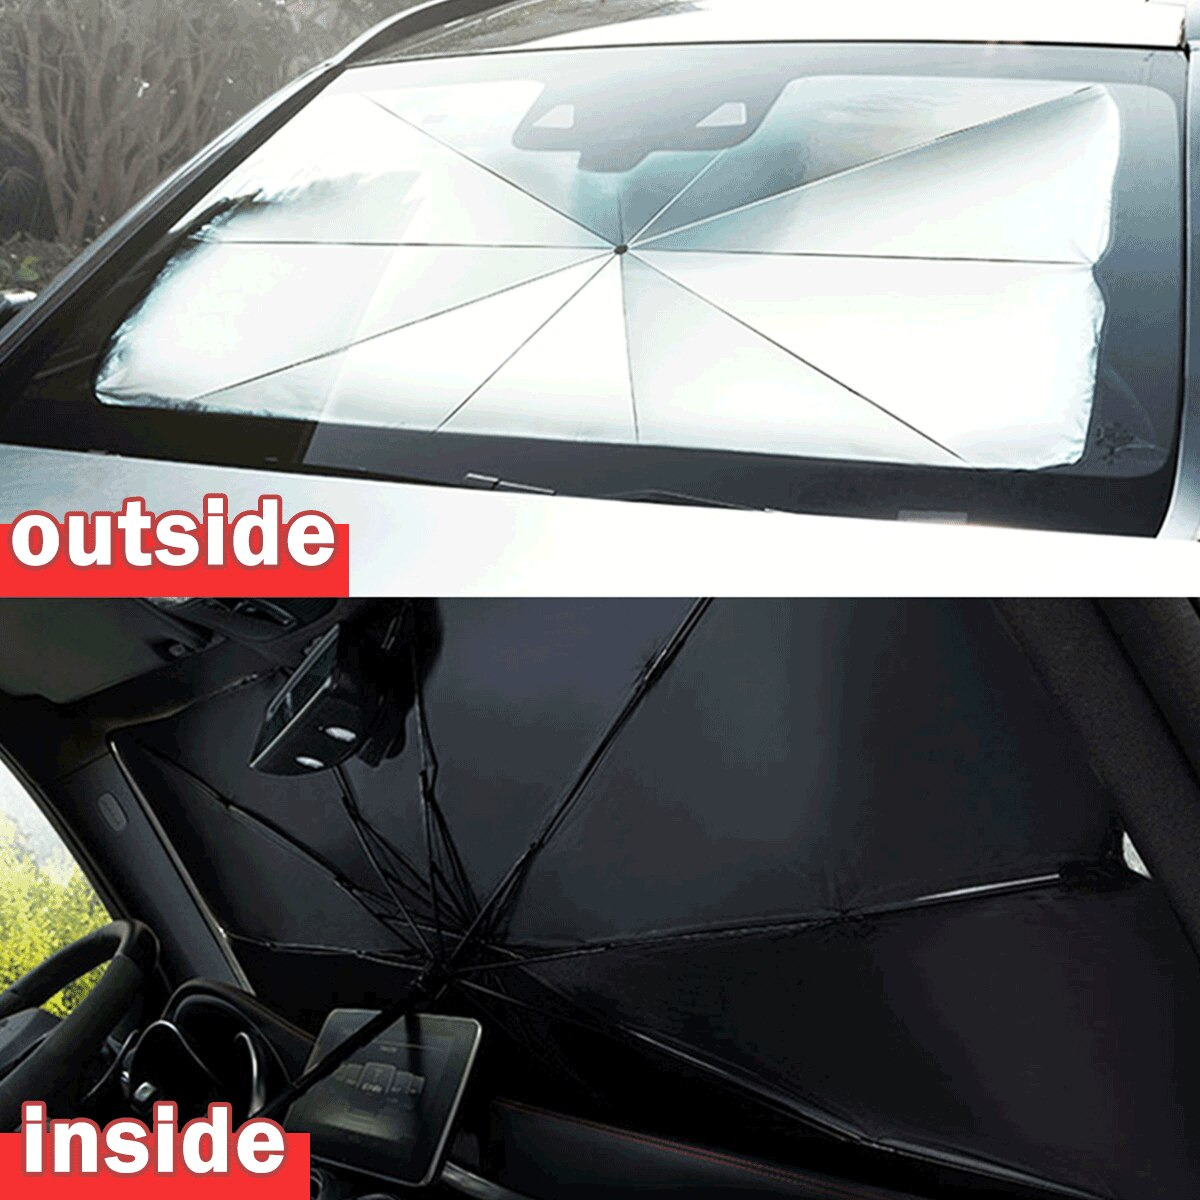 Pliable pare-soleil protecteur pour voiture, Parasol fenêtre avant, pare-soleil Anti-UV, isolation thermique, couvre pare-brise, accessoires de Protection